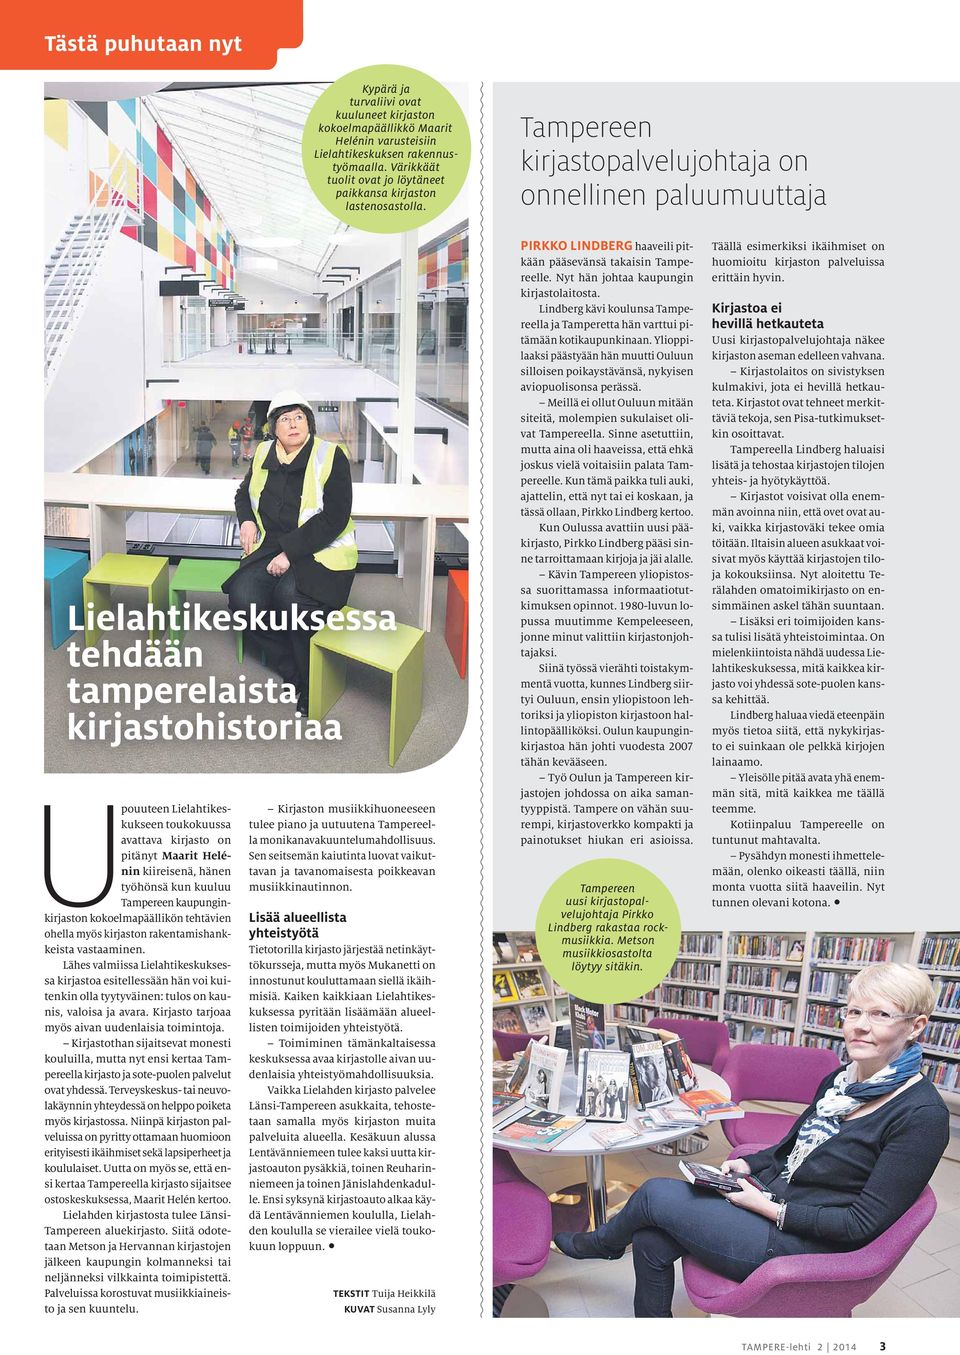 Tampereen kirjastopalvelujohtaja on onnellinen paluumuuttaja Lielahtikeskuksessa tehdään tamperelaista kirjastohistoriaa Upouuteen Lielahtikeskukseen toukokuussa avattava kirjasto on pitänyt Maarit